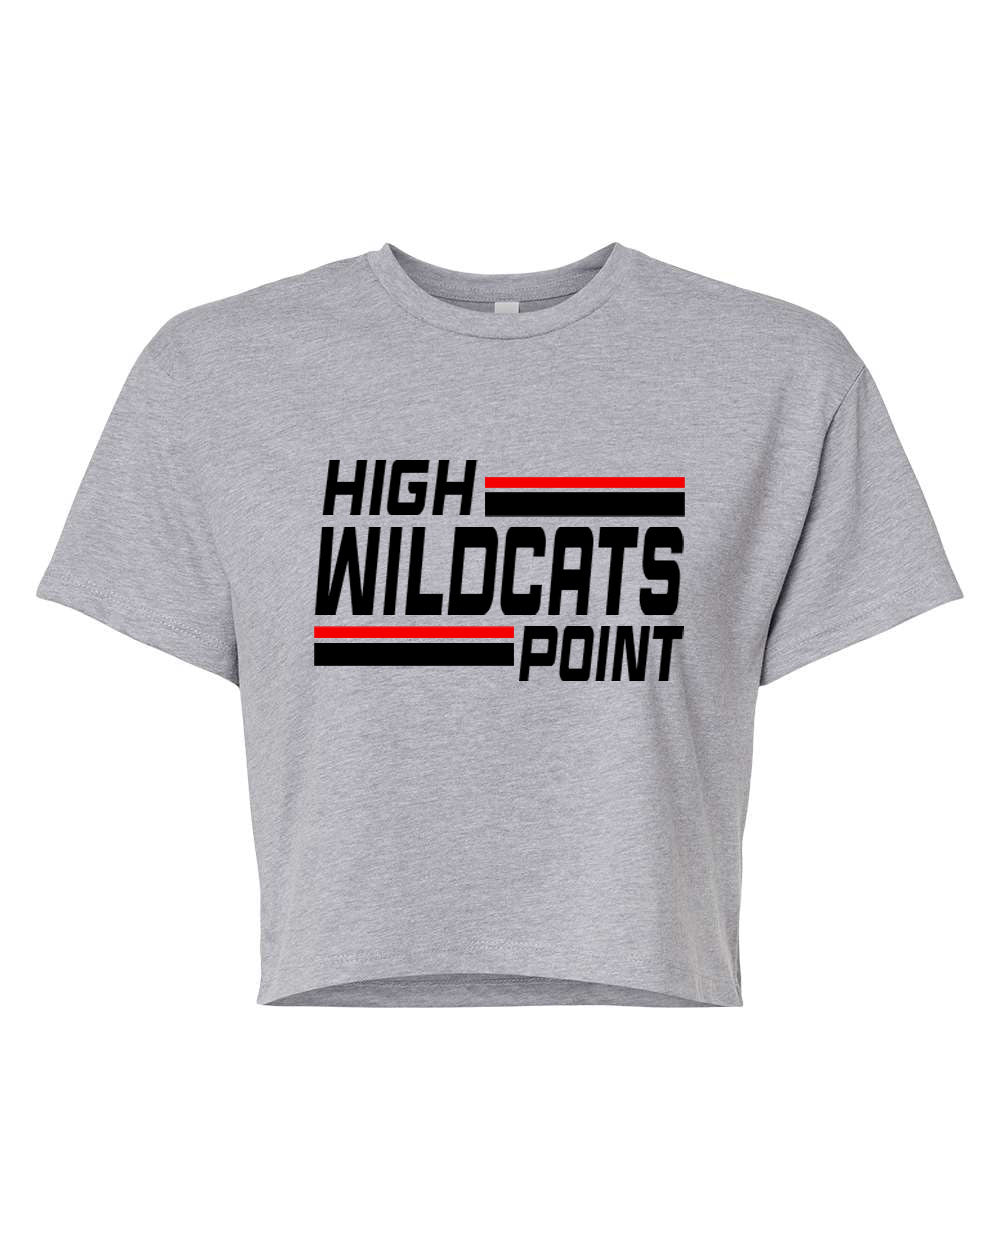 Wildcats Cheer design 4 Crop Top